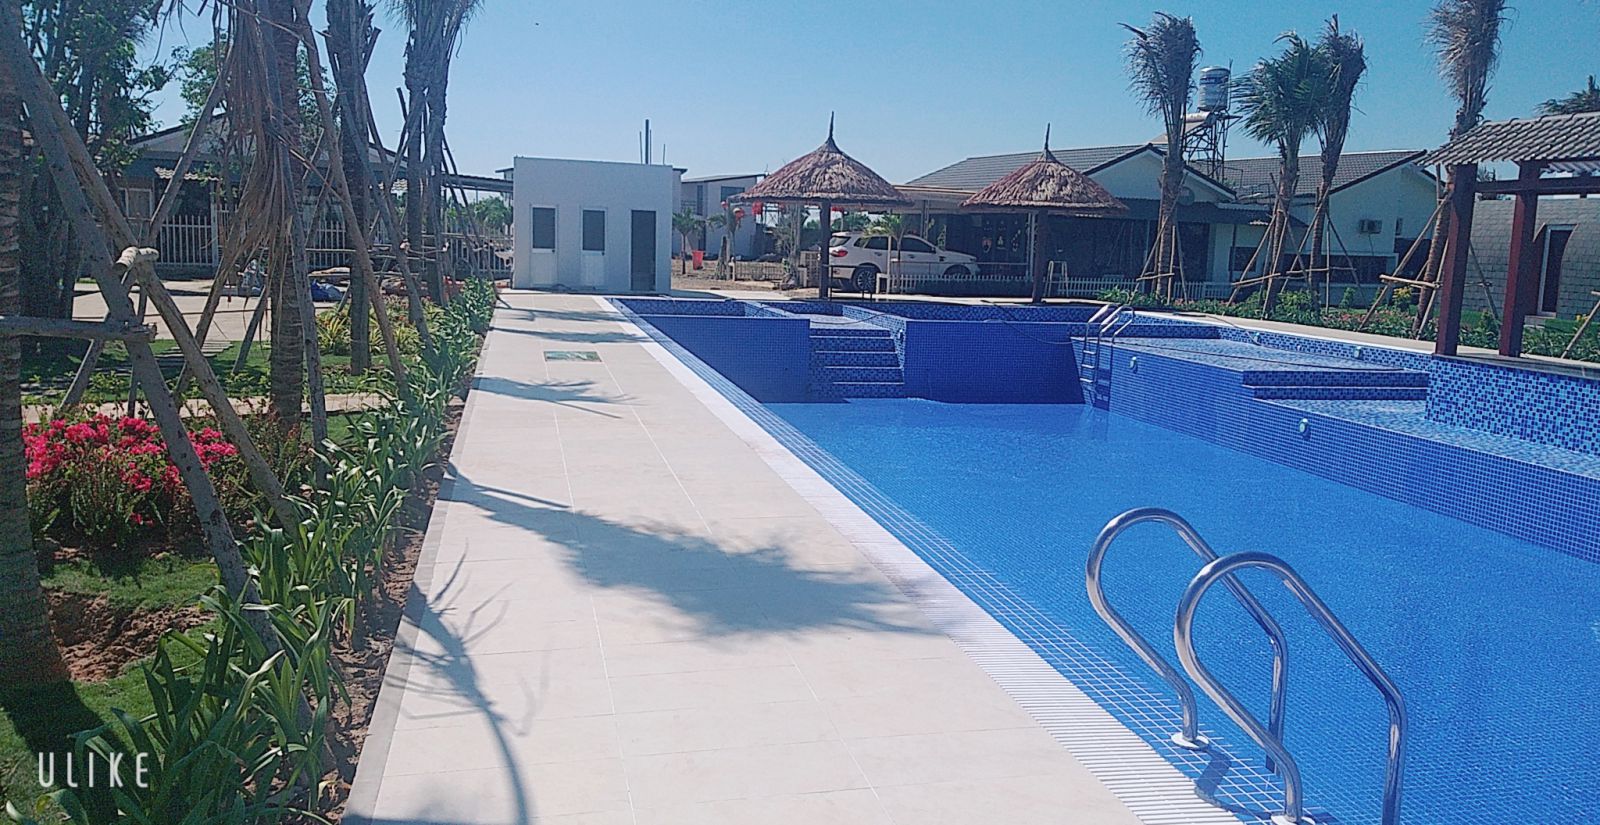 Thi công hồ bơi khu resort hoàn thiện bằng gạch mosaic nhập khẩu